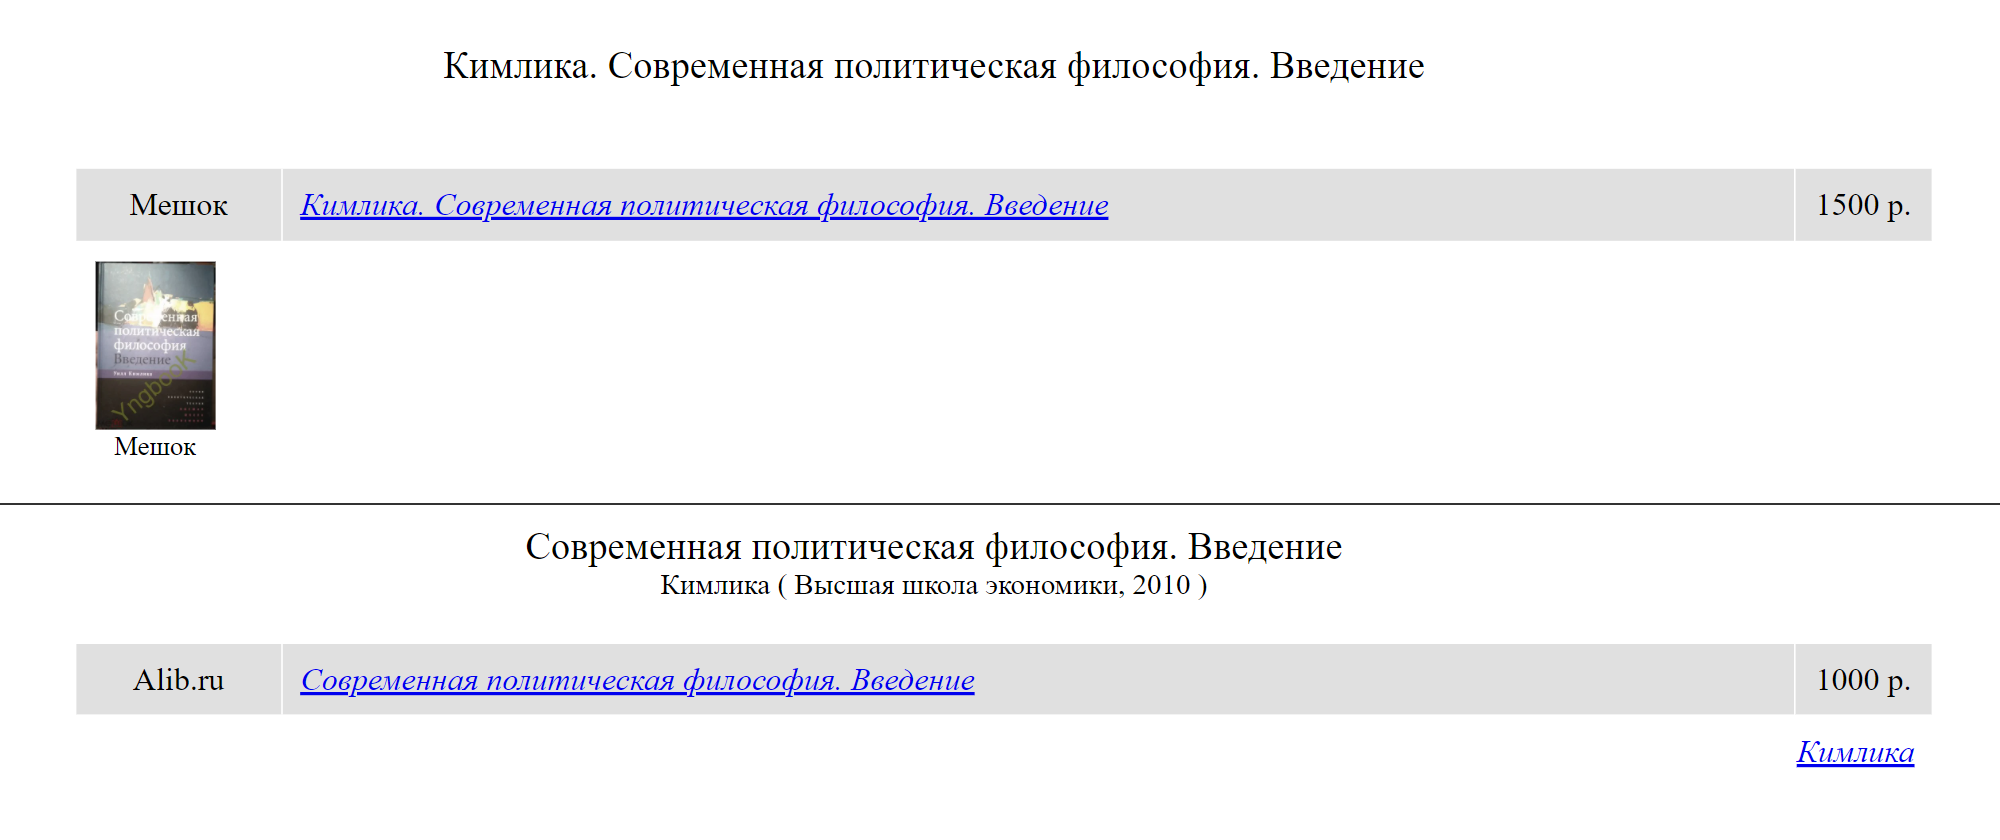 Когда я попытался поискать ее у букинистов, findbook.ru показал мне только два экземпляра за 1000 ₽ и 1500 ₽